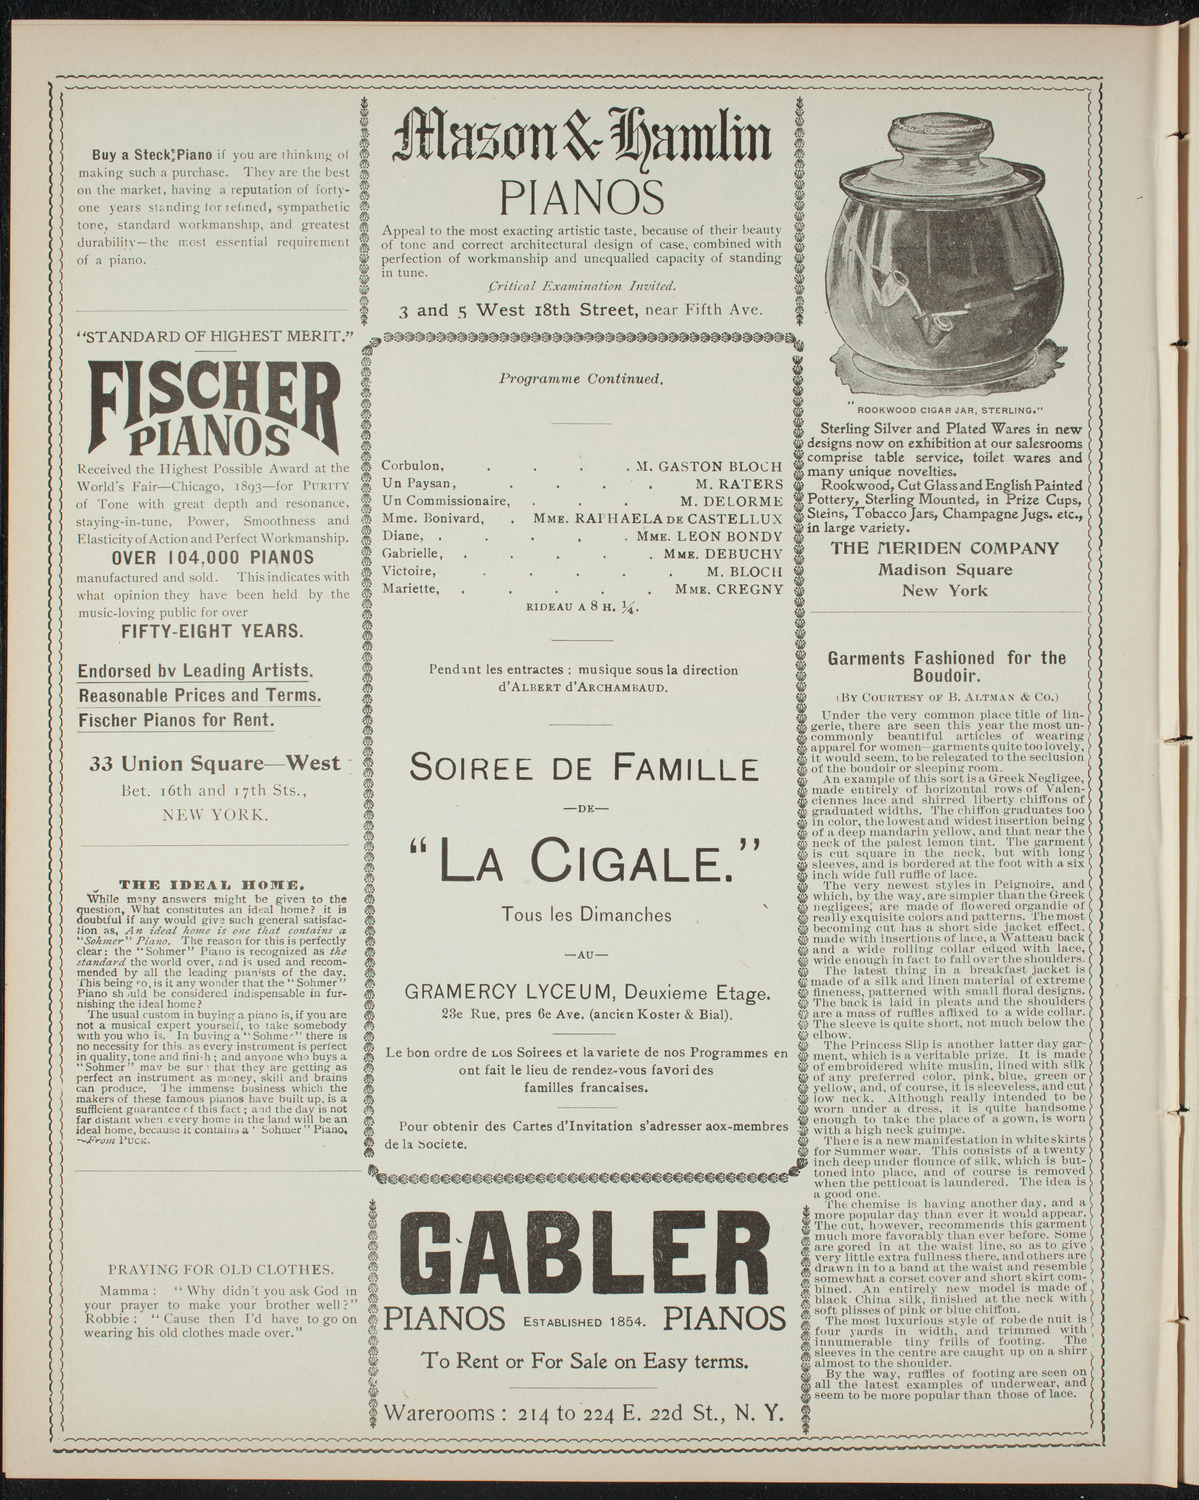 Cercle Choral et Dramatique Francais "La Cigale", April 25, 1898, program page 6